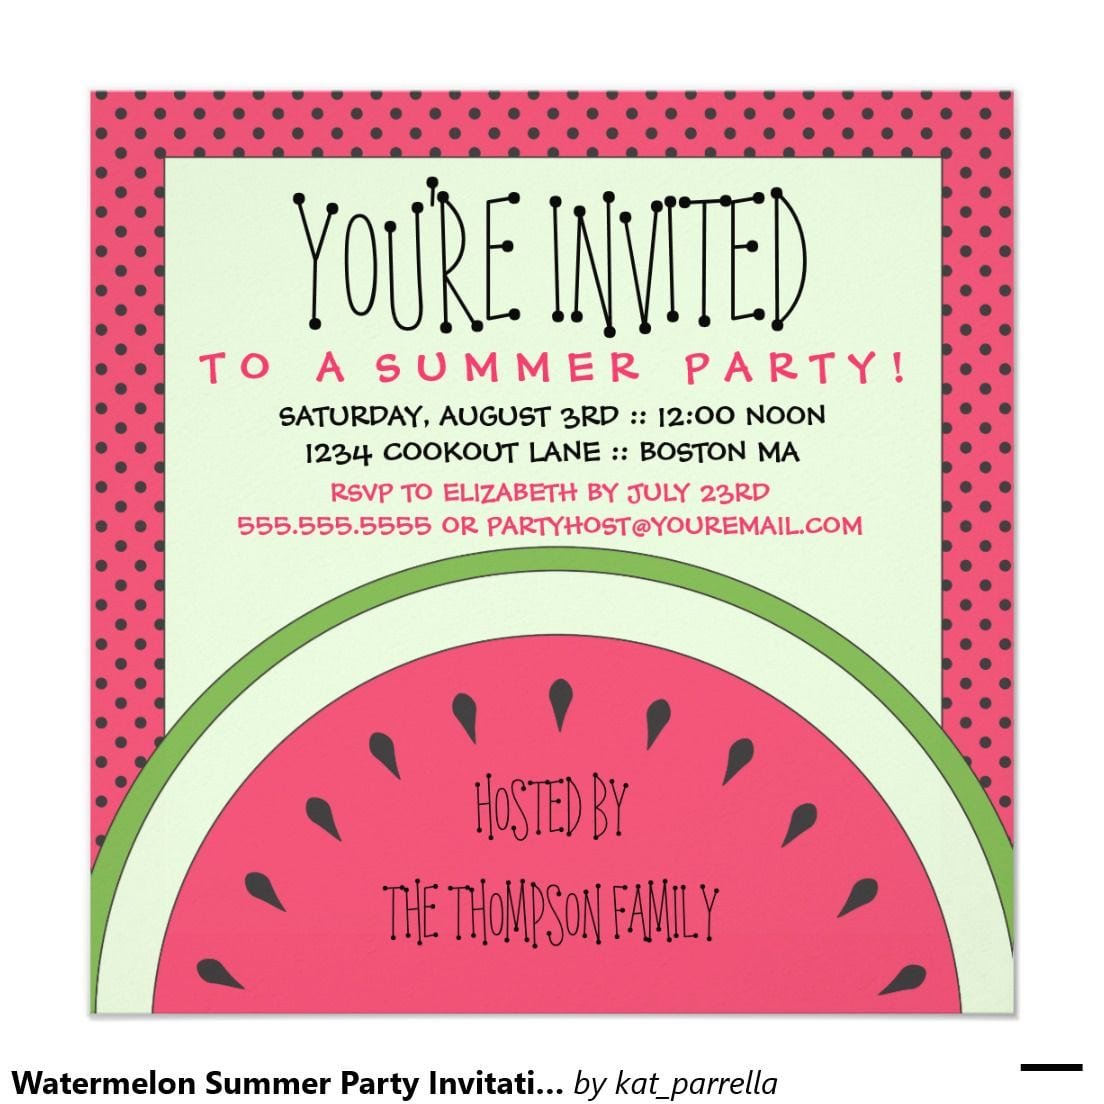 Party Invitation Designs